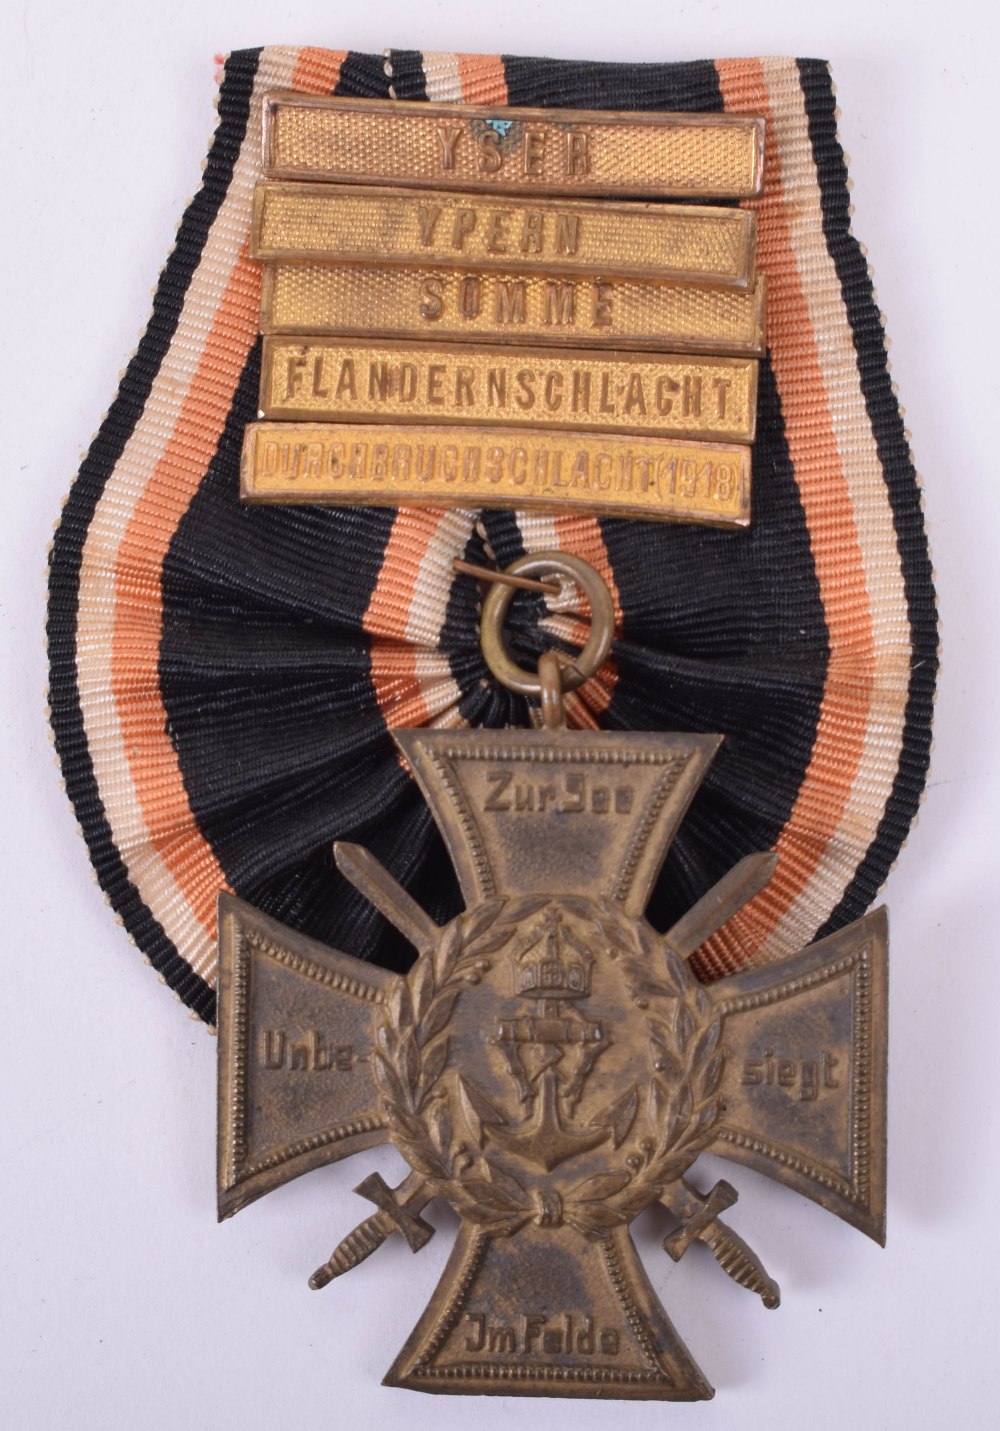 1914-18 Imperial German Naval Flanders Cross with Five Bars